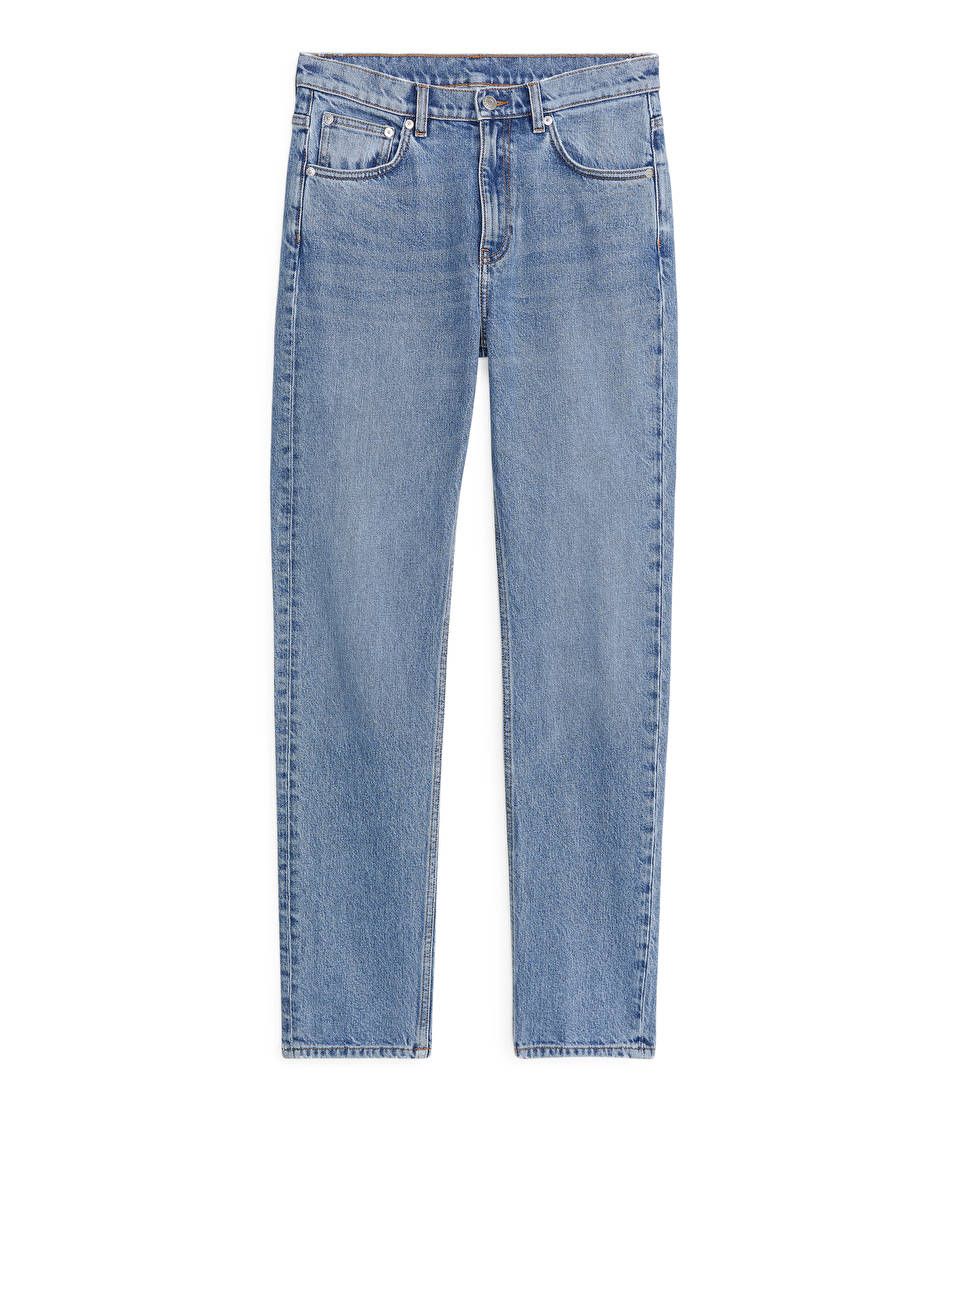 REGULAR STRETCH Jeans | ARKET (US&UK)